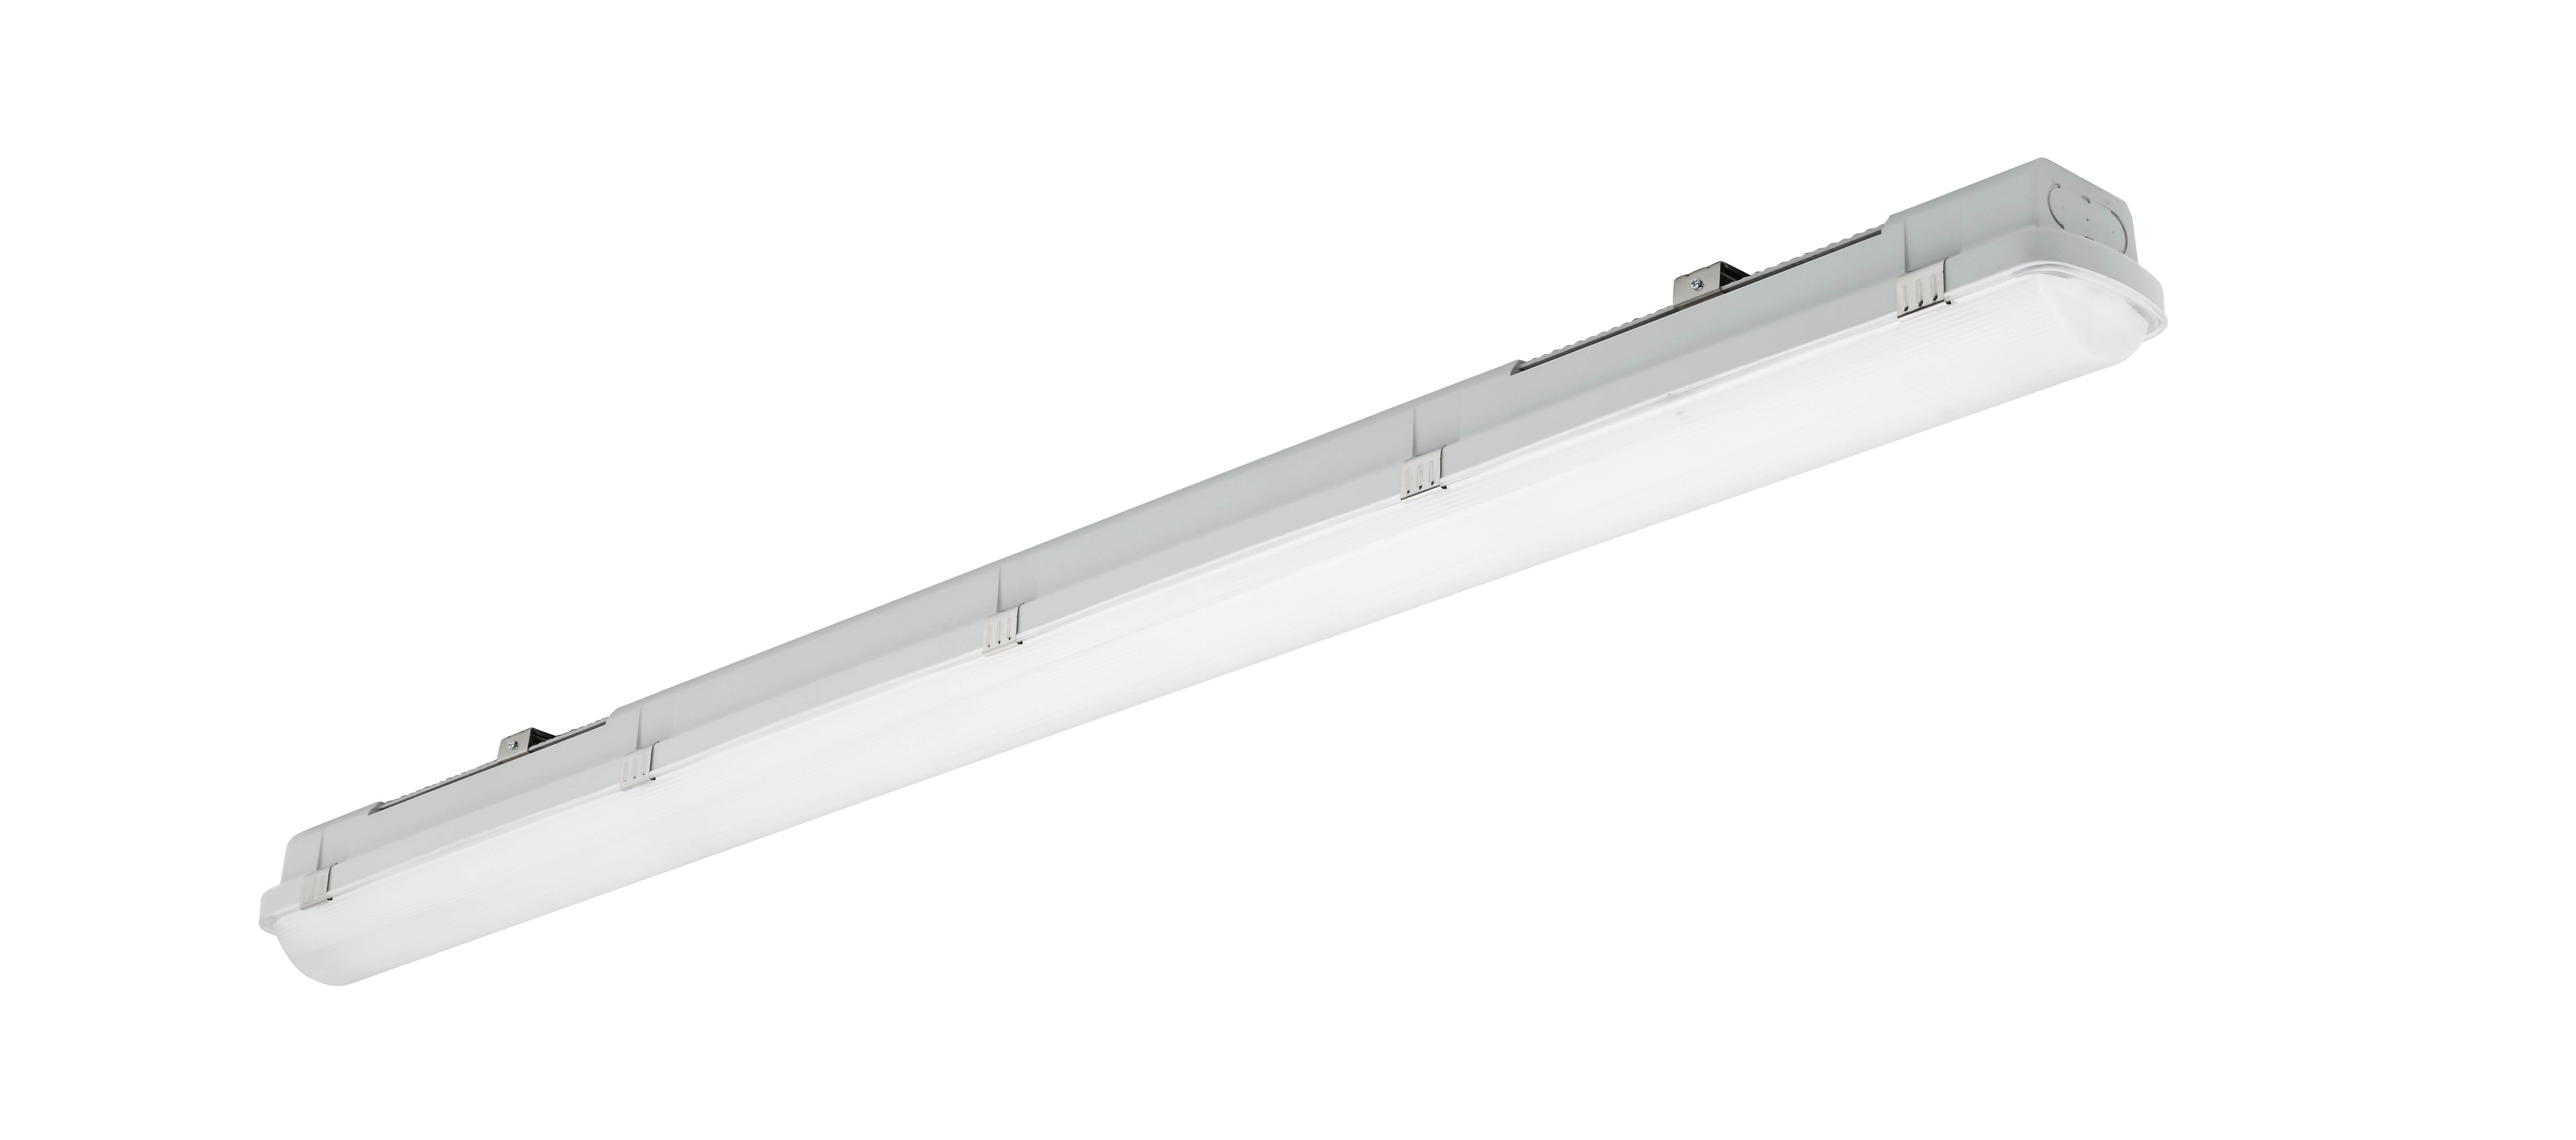 LAMPADA A LED SURGE PROTECTION 11W 2700K FASCIO 200° - BOT